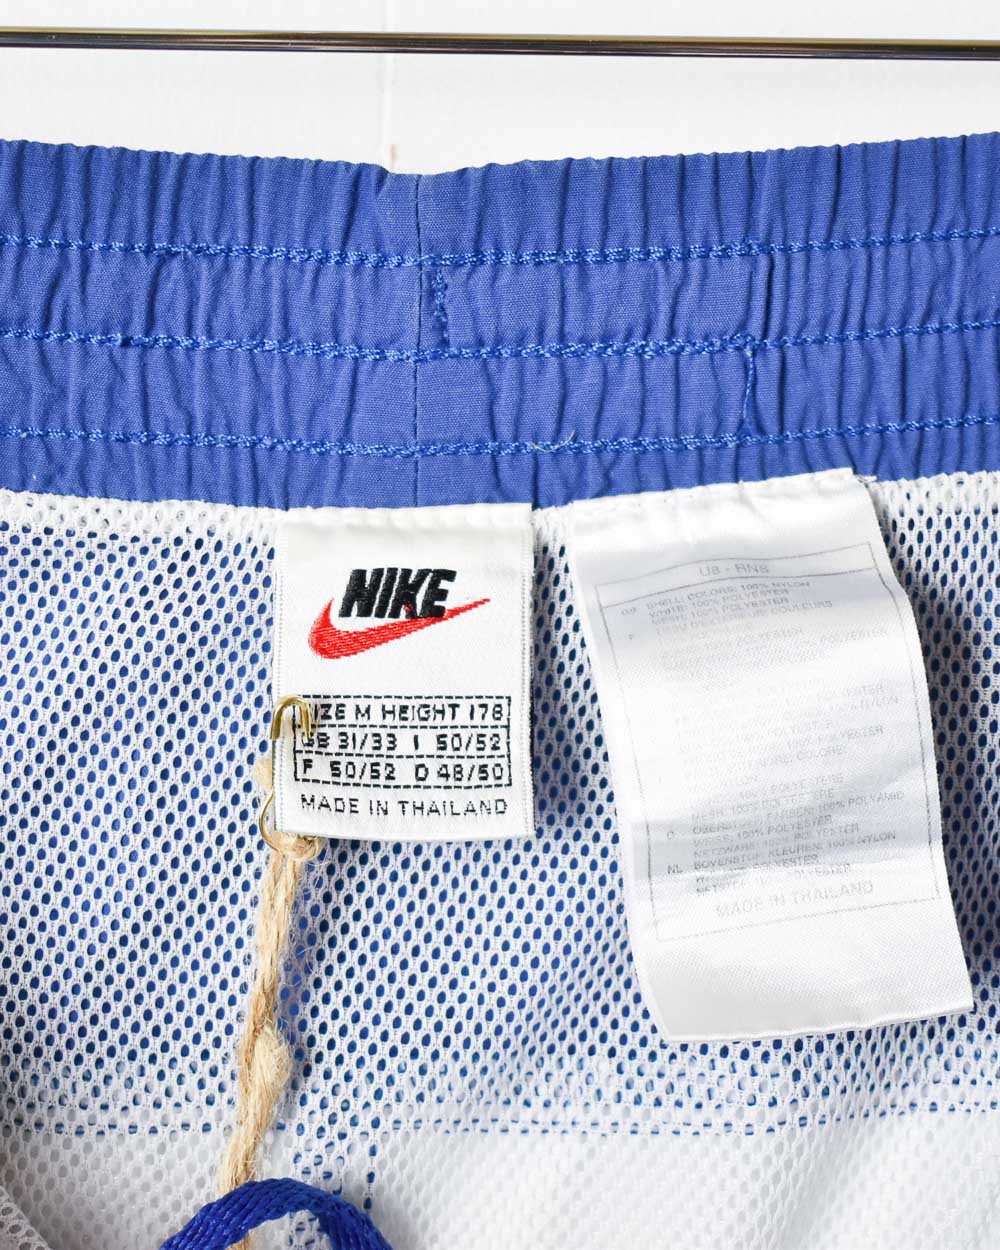 Blue Nike Mesh Shorts - Medium